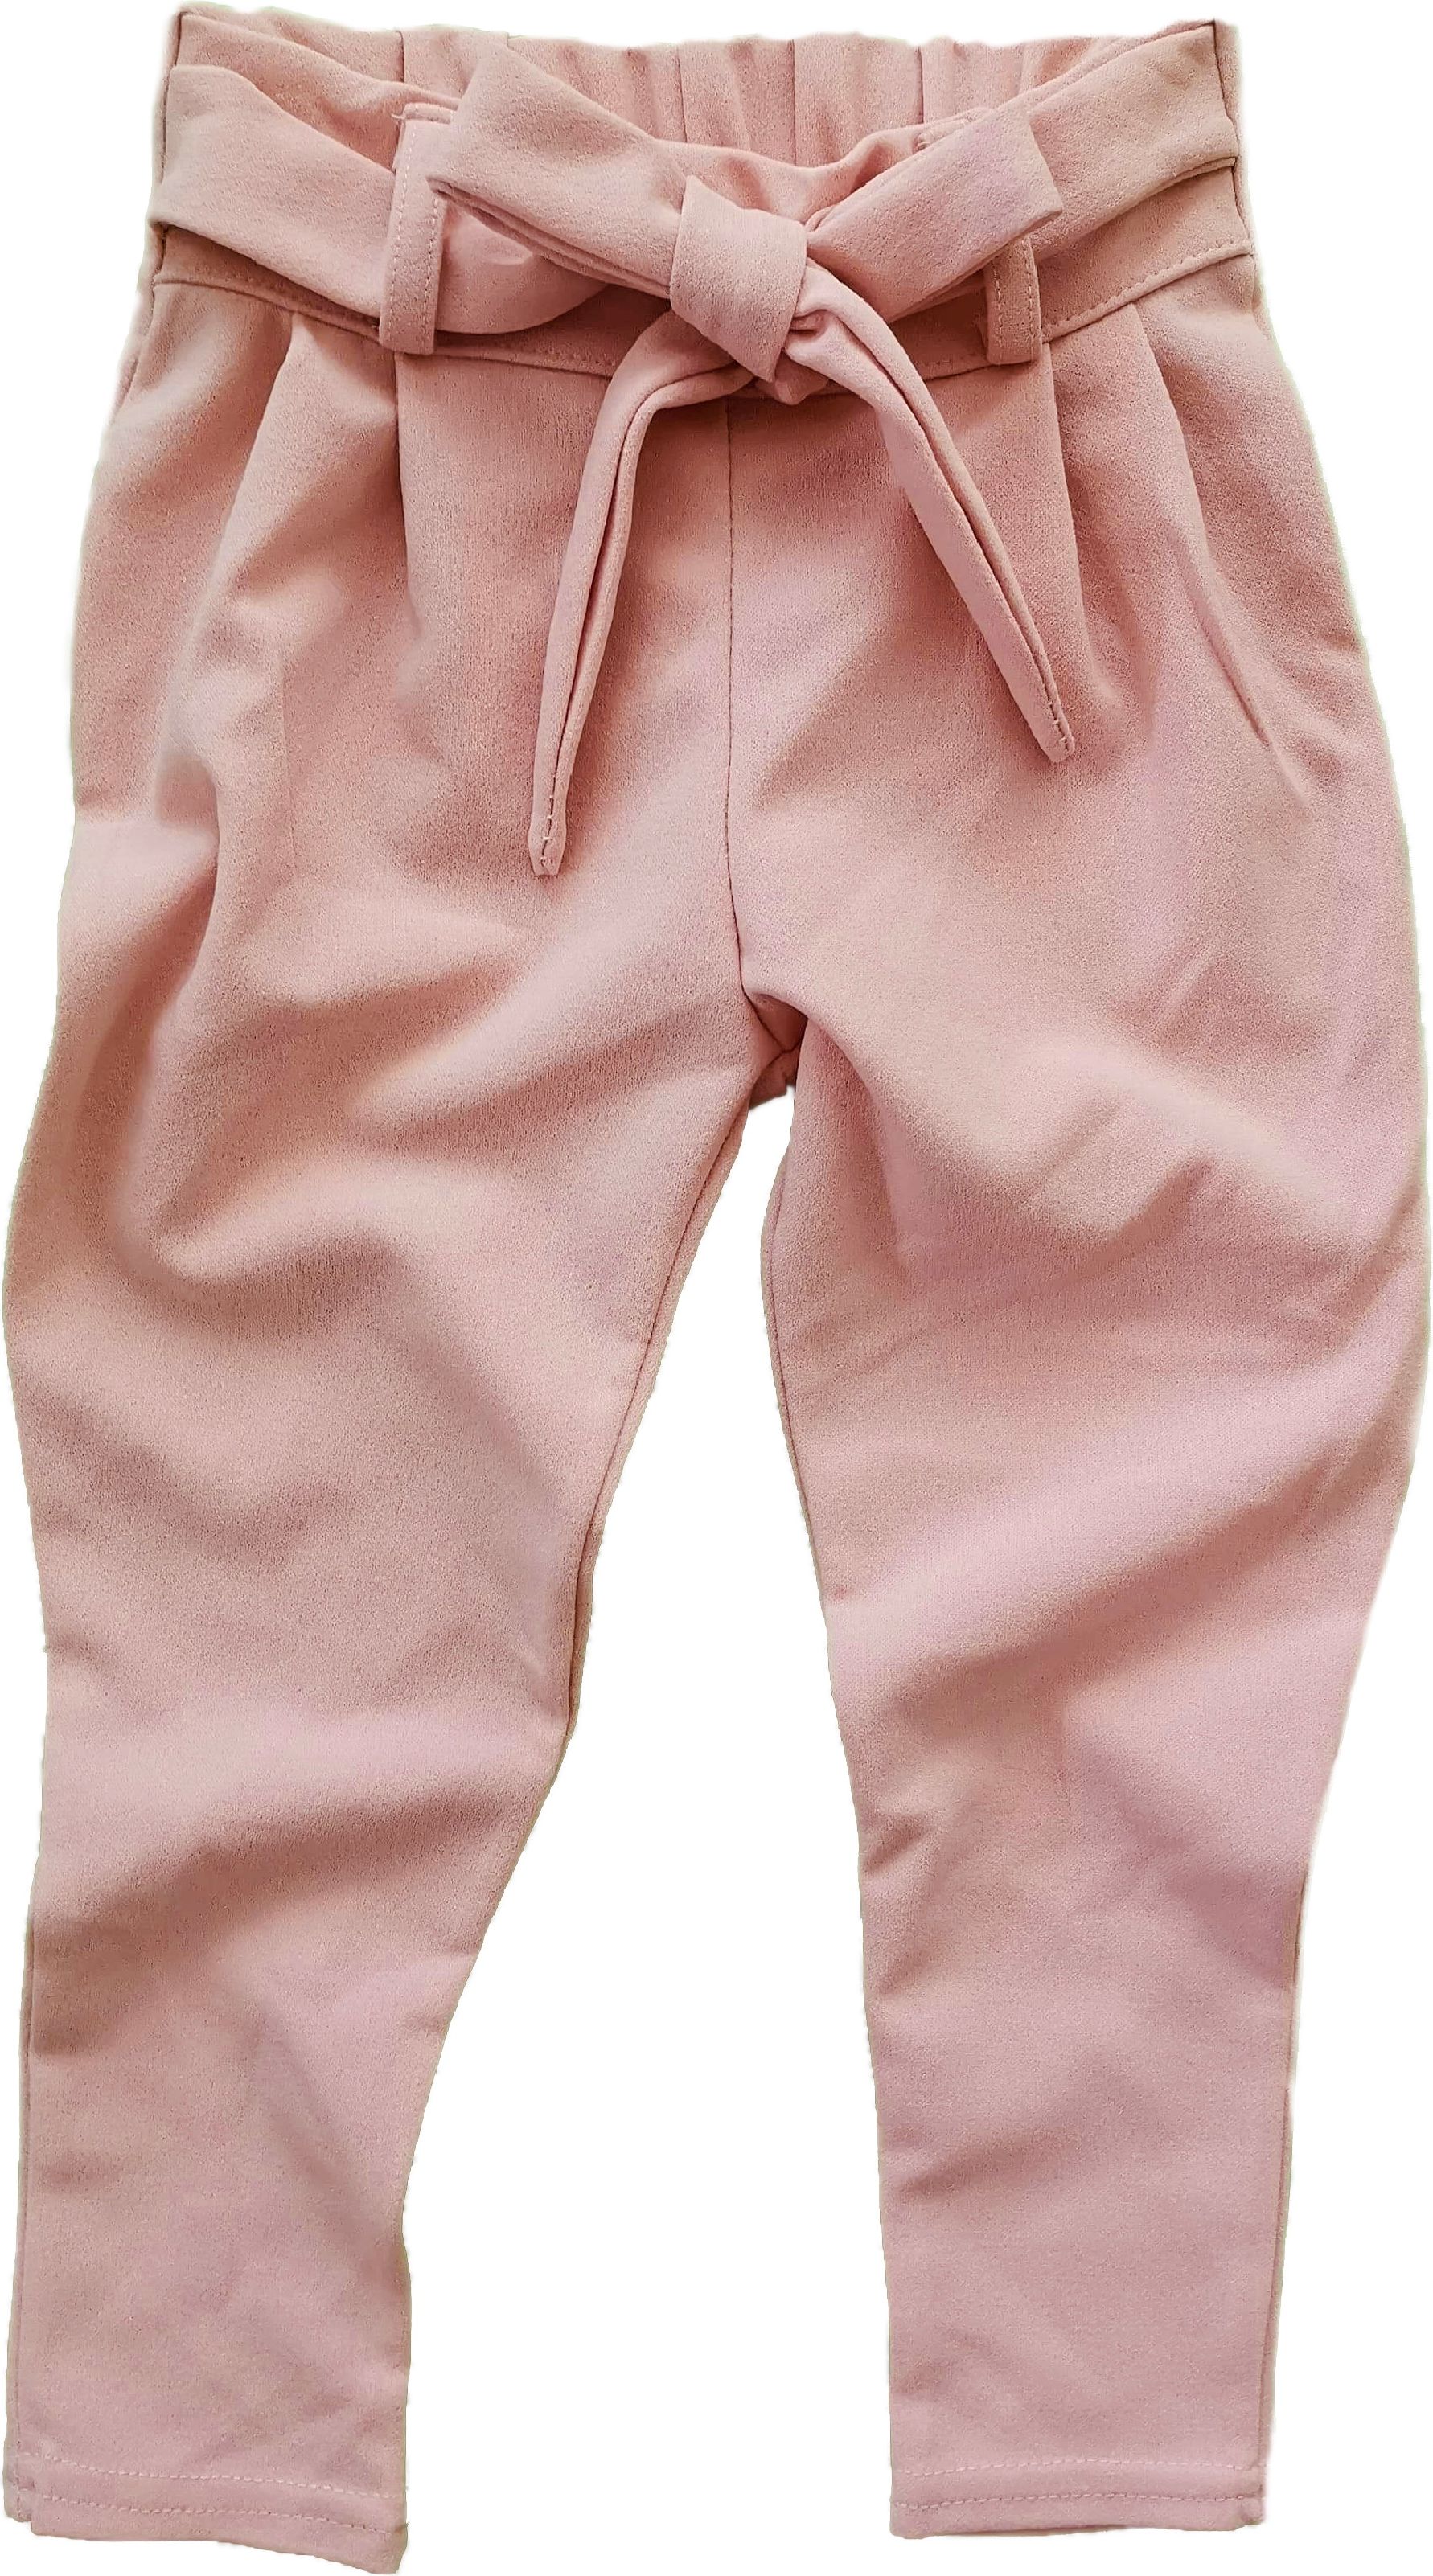 Společenské kalhoty růžové 104 - 4 roky - obrázek 1